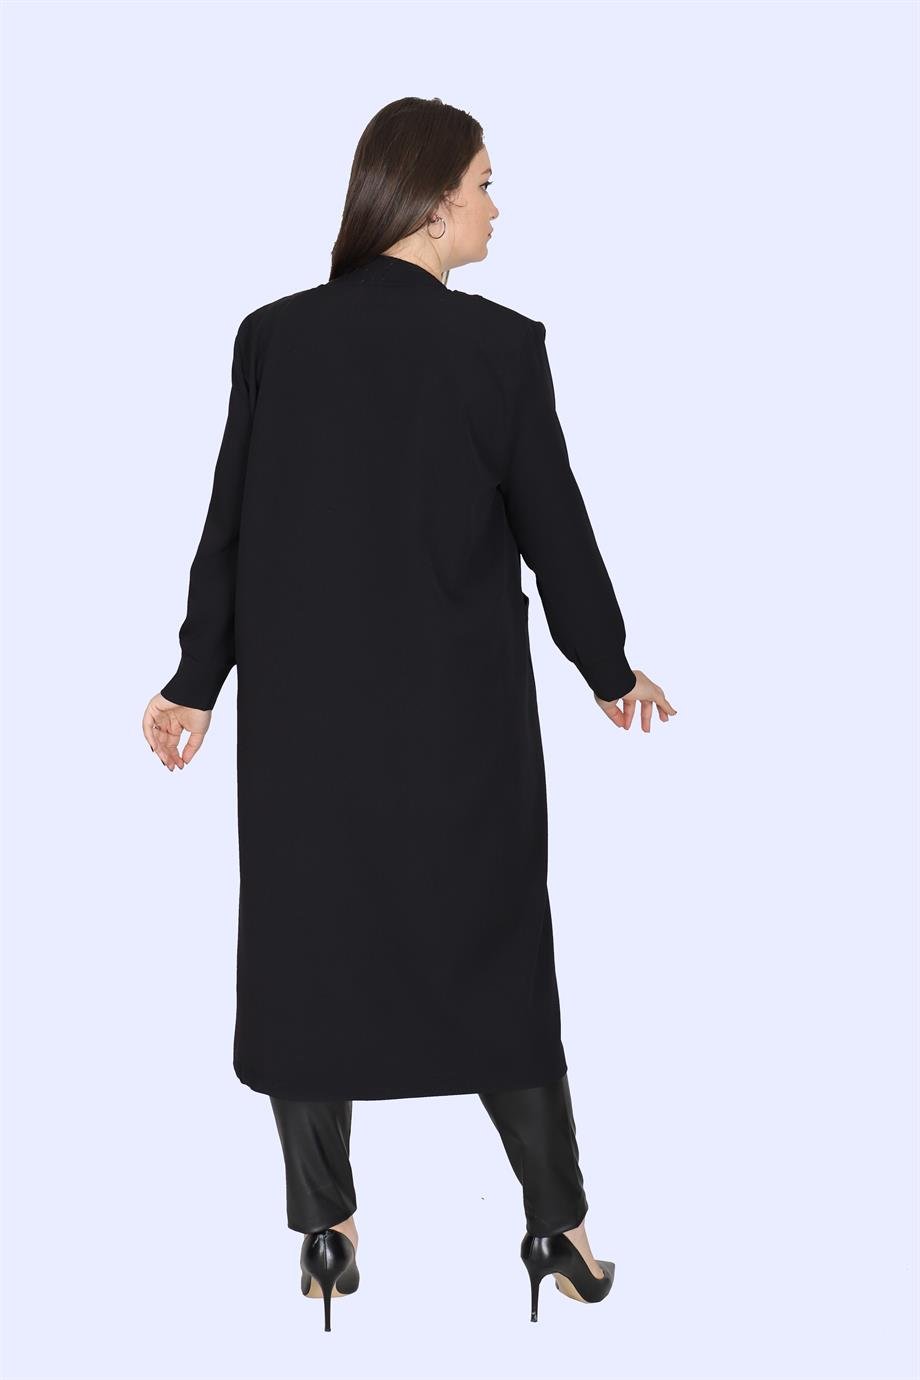 Büyük Beden Bien Tunik Siyah | Bedrinxxl | Büyük Beden Abiye Elbise, Tunik,  Genç Buyuk Beden Elbise Tesettür Modelleri ve Fiyatları